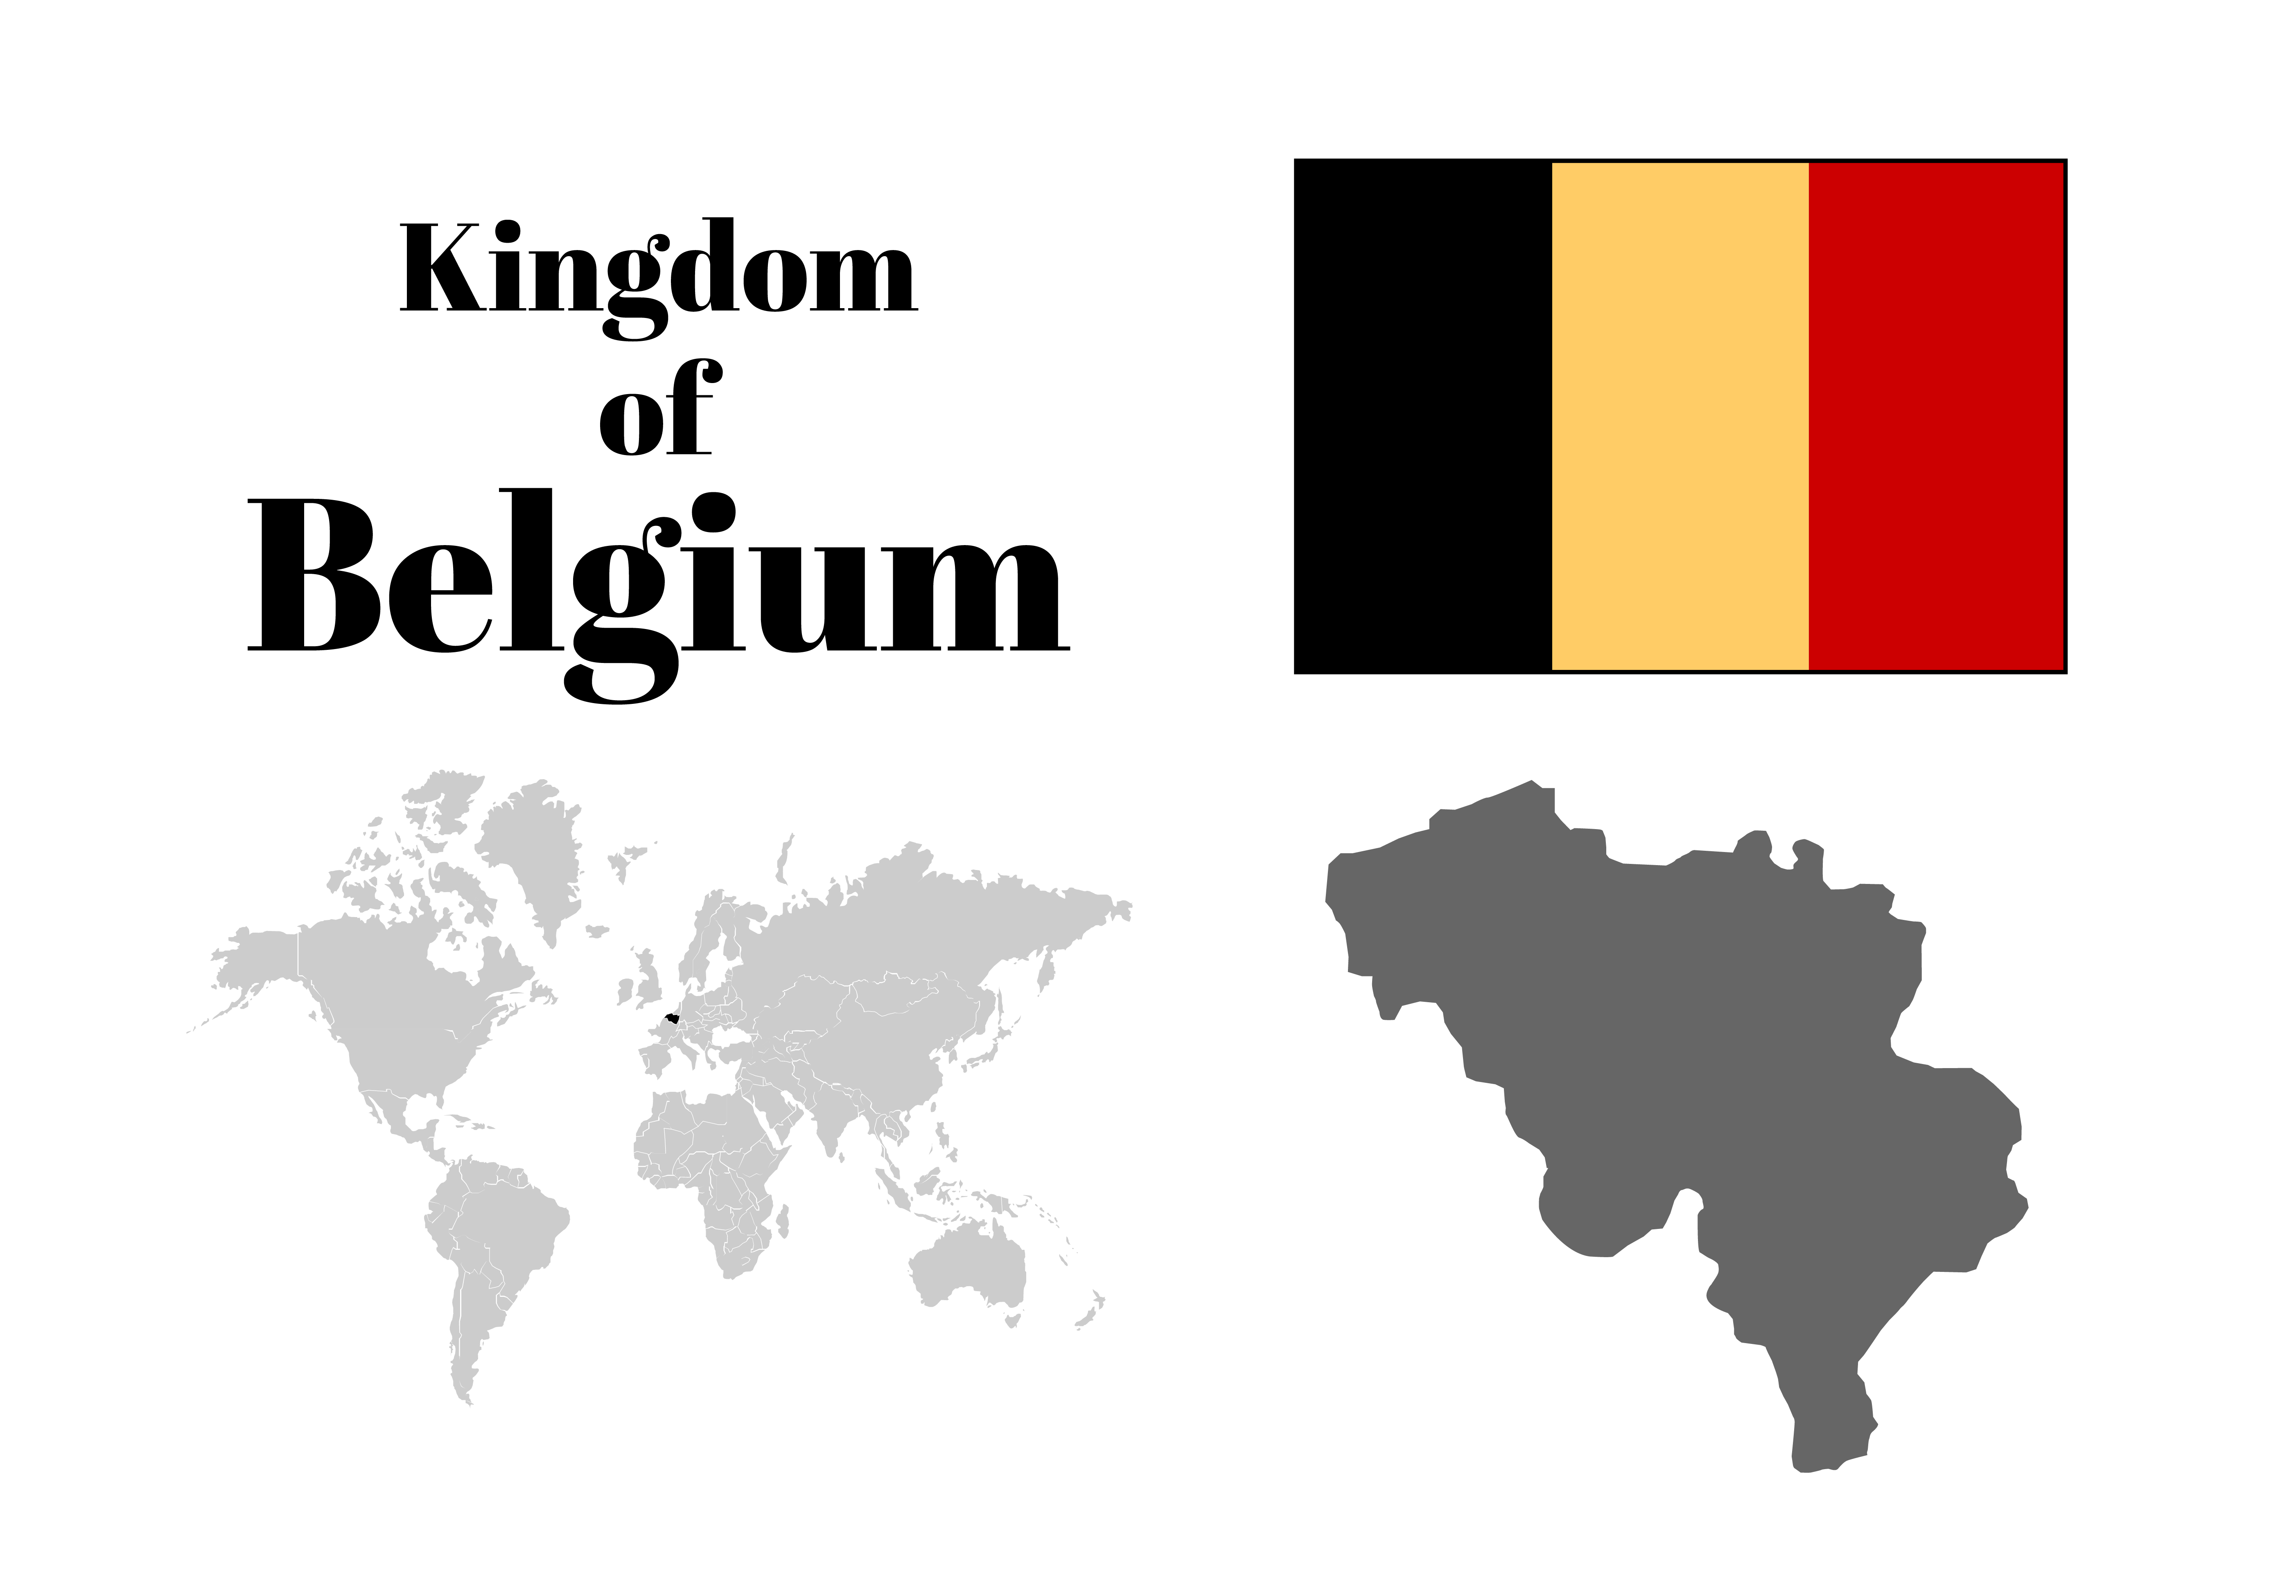 ベルギー王国とは